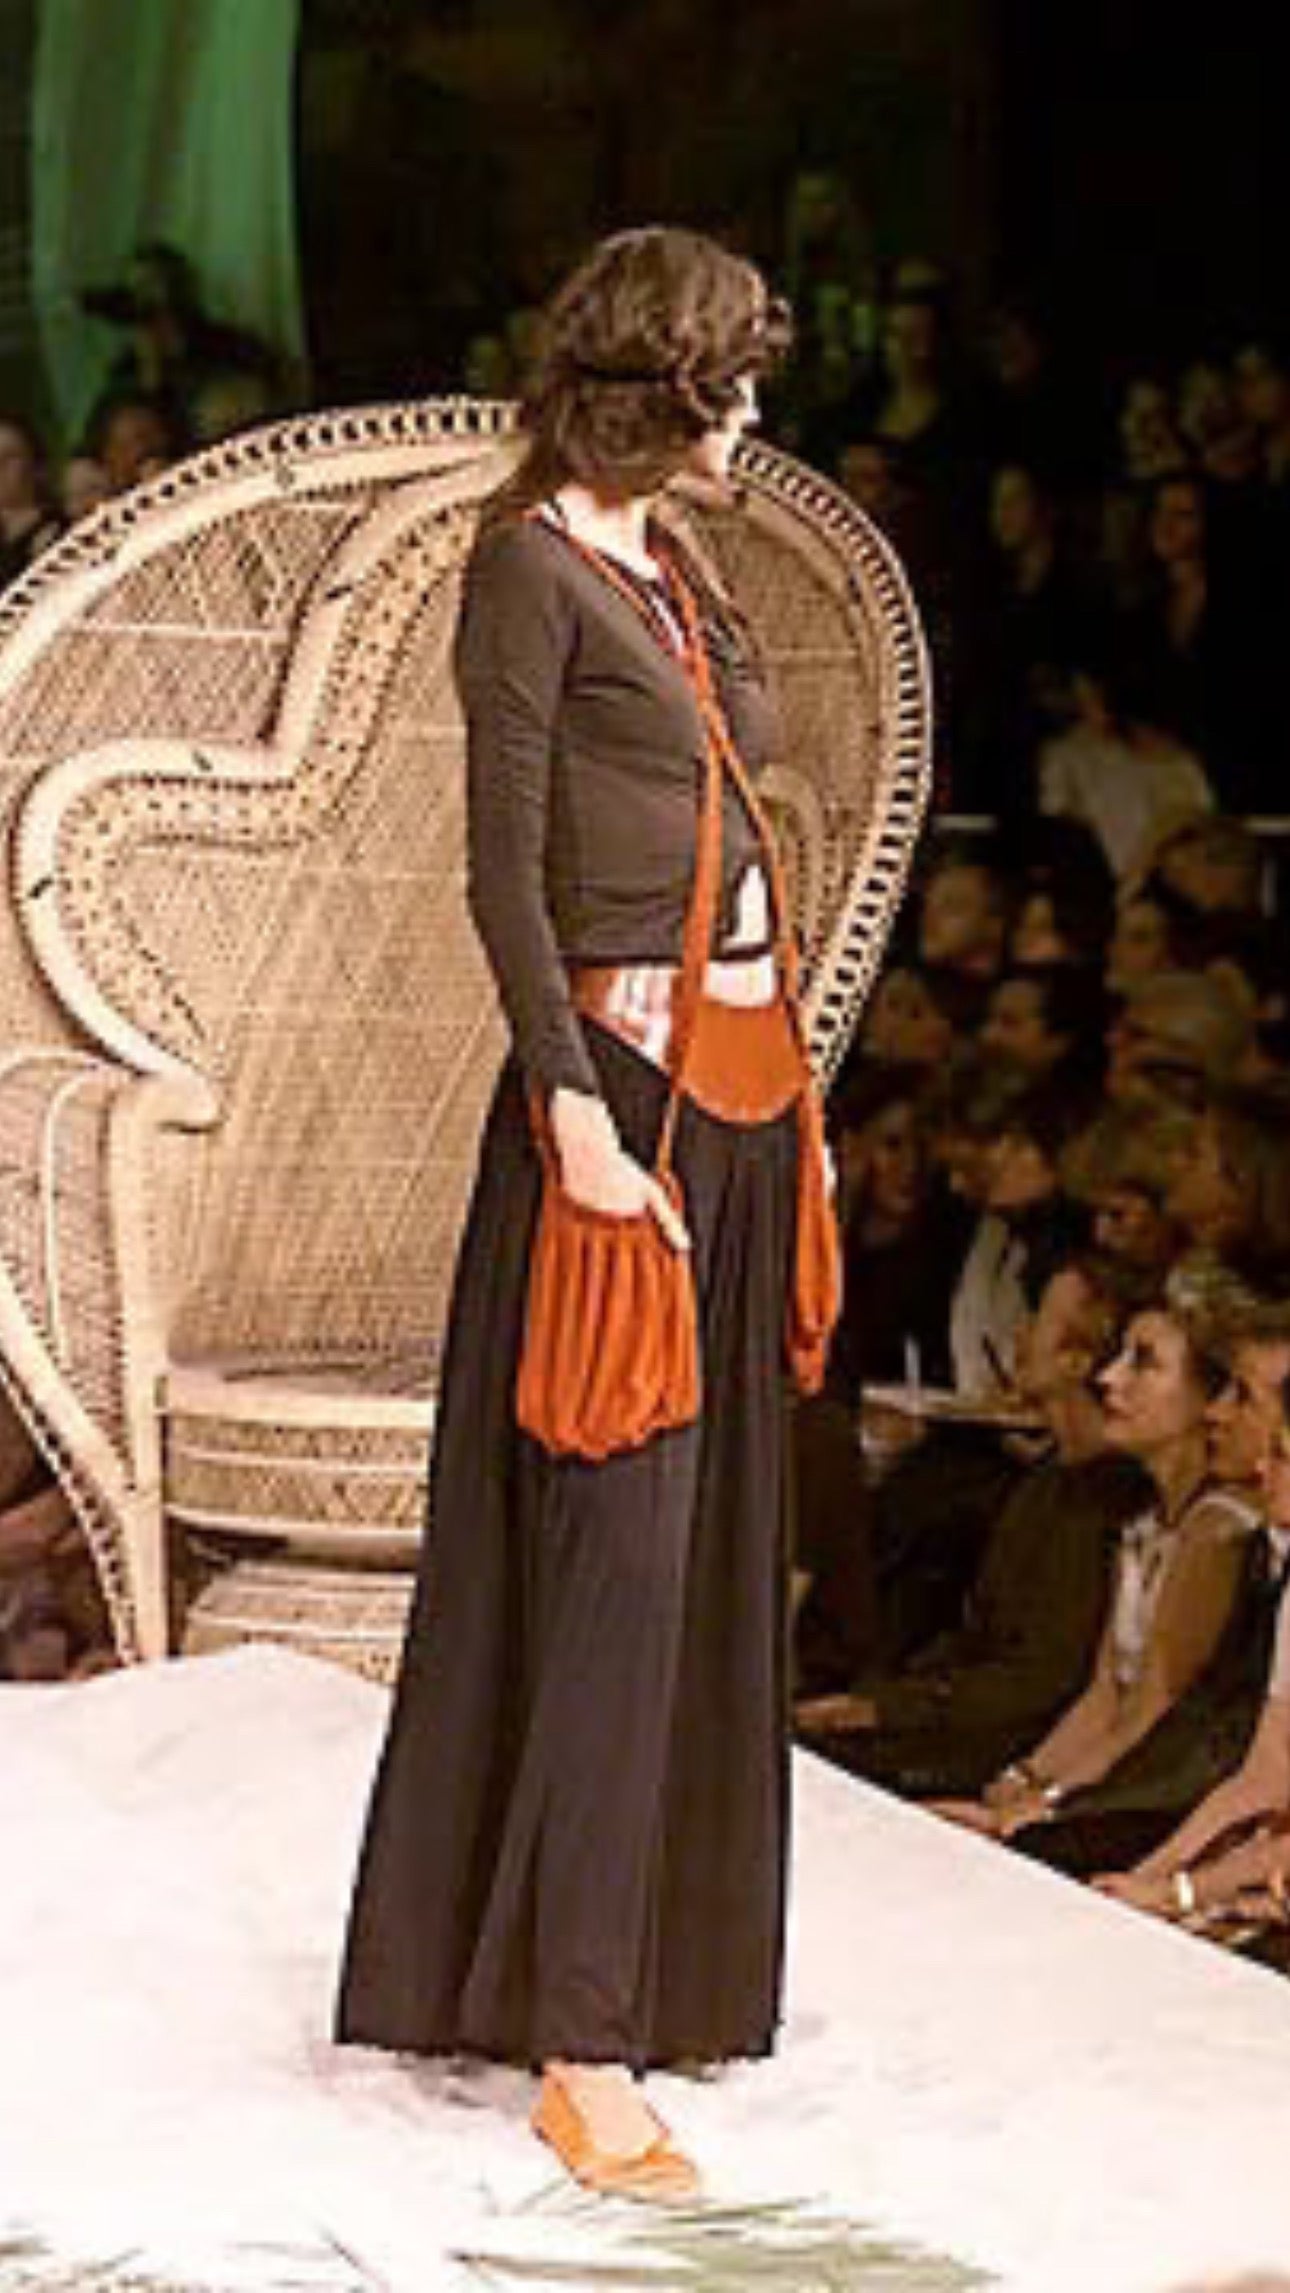 Jean Paul Gaultier SS 2000 Femme Skirt